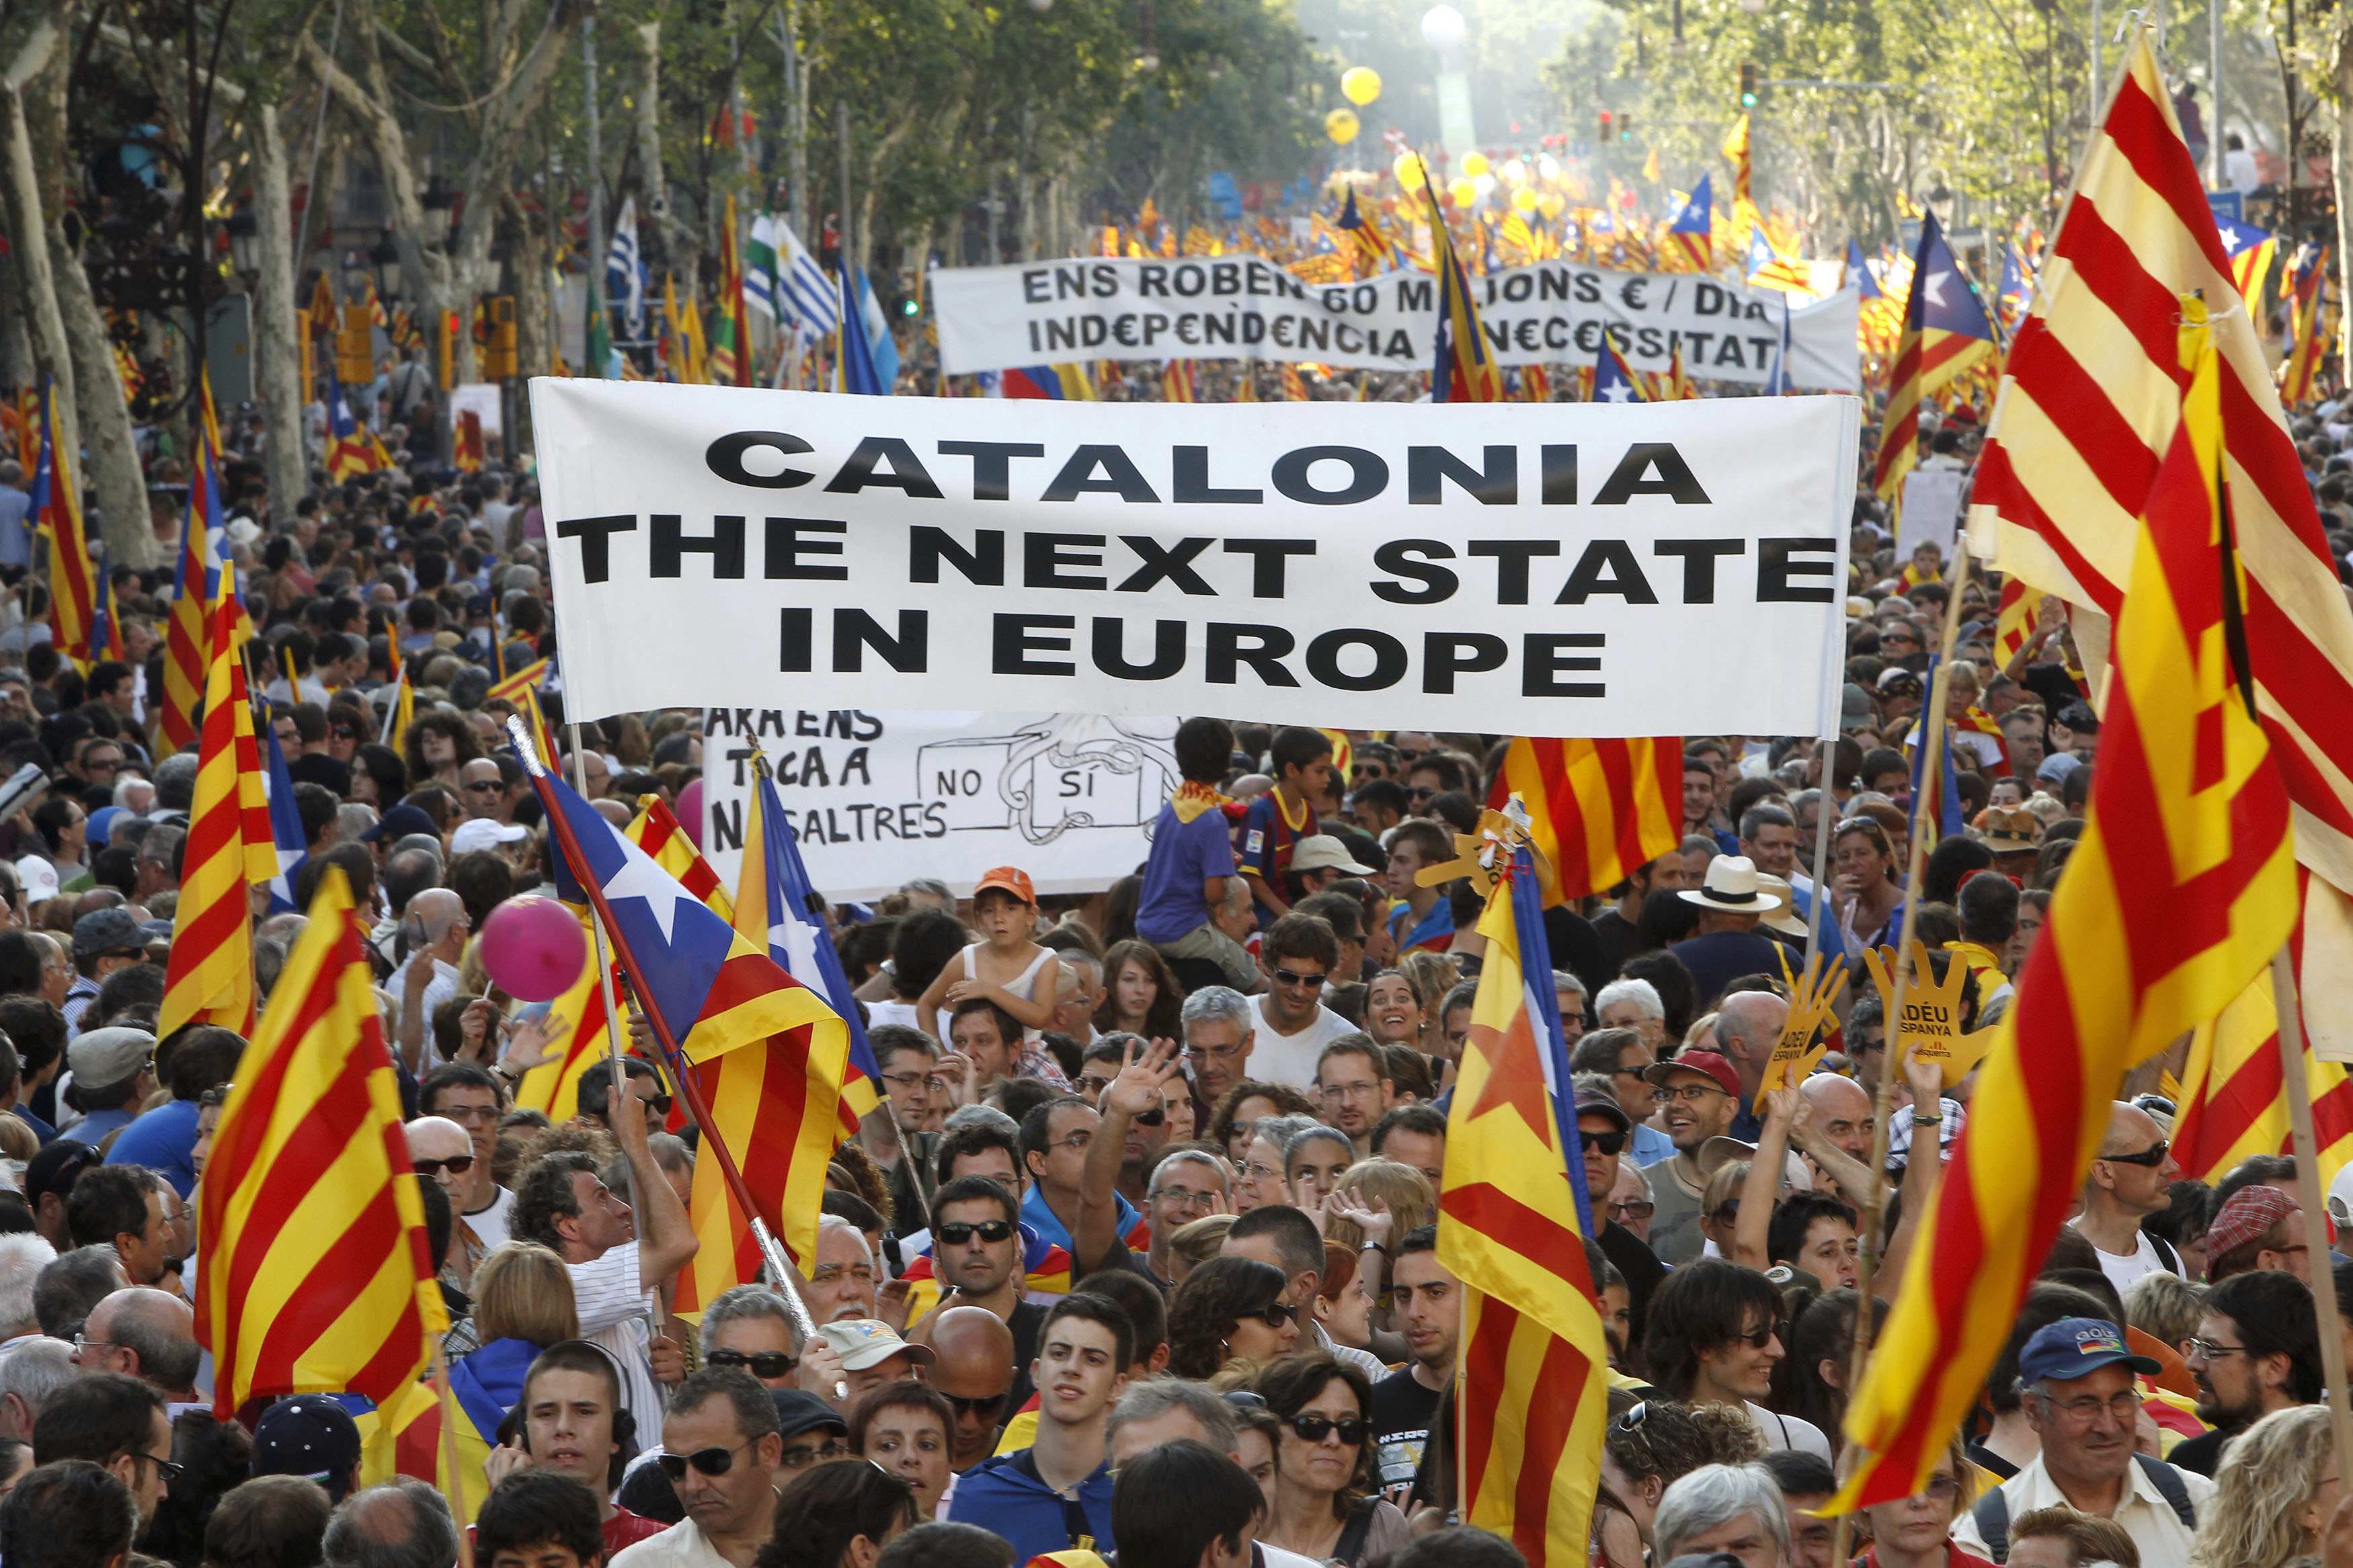 Καταλονία: Εμείς συνεχίζουμε, η Σκωτία έδειξε το δρόμο